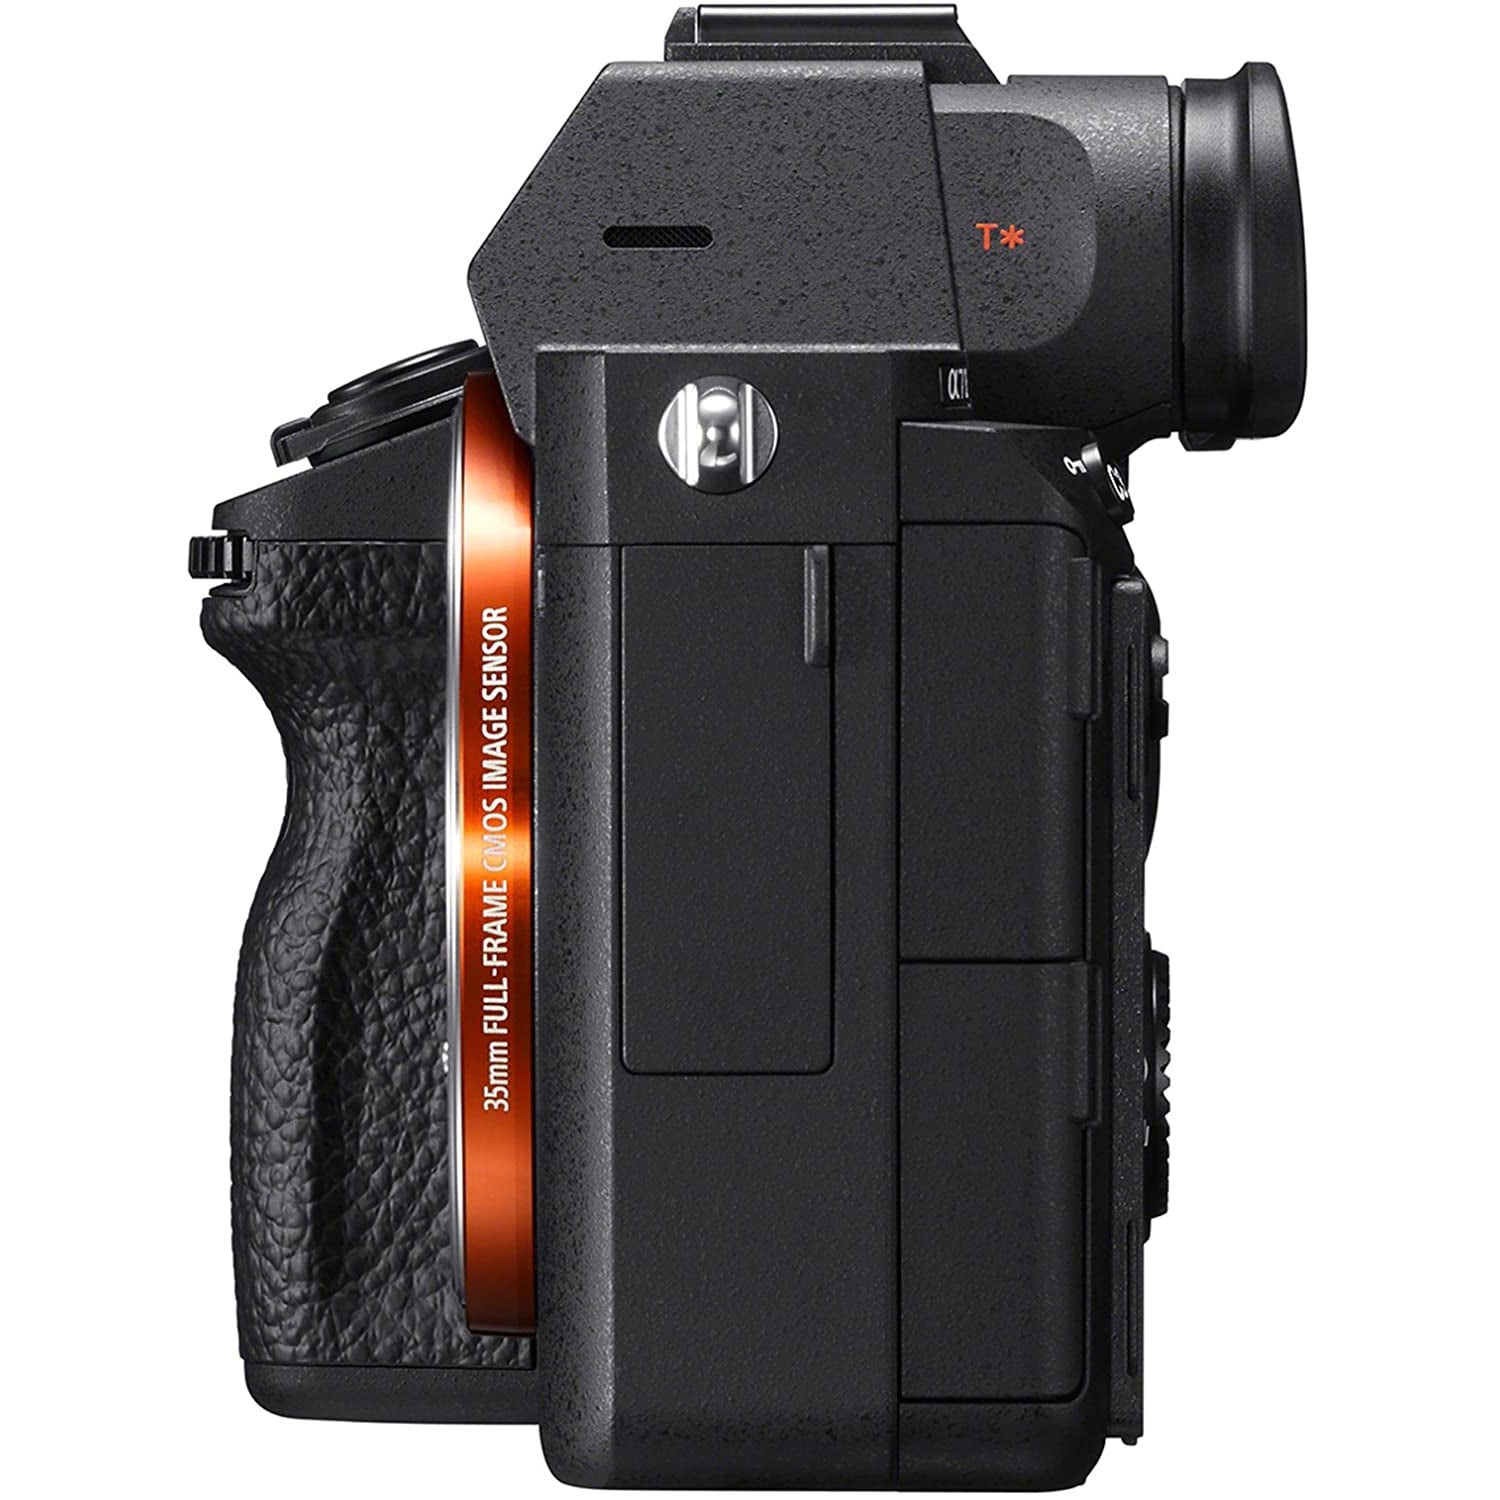 Sony Alpha 7 III - Full-Frame Mirrorless Camera + Sony SEL1635Z E Mount Full Frame Vario T-Star 16-35 mm F4.0 Zeiss Lens (ILCE7M3/B) Black